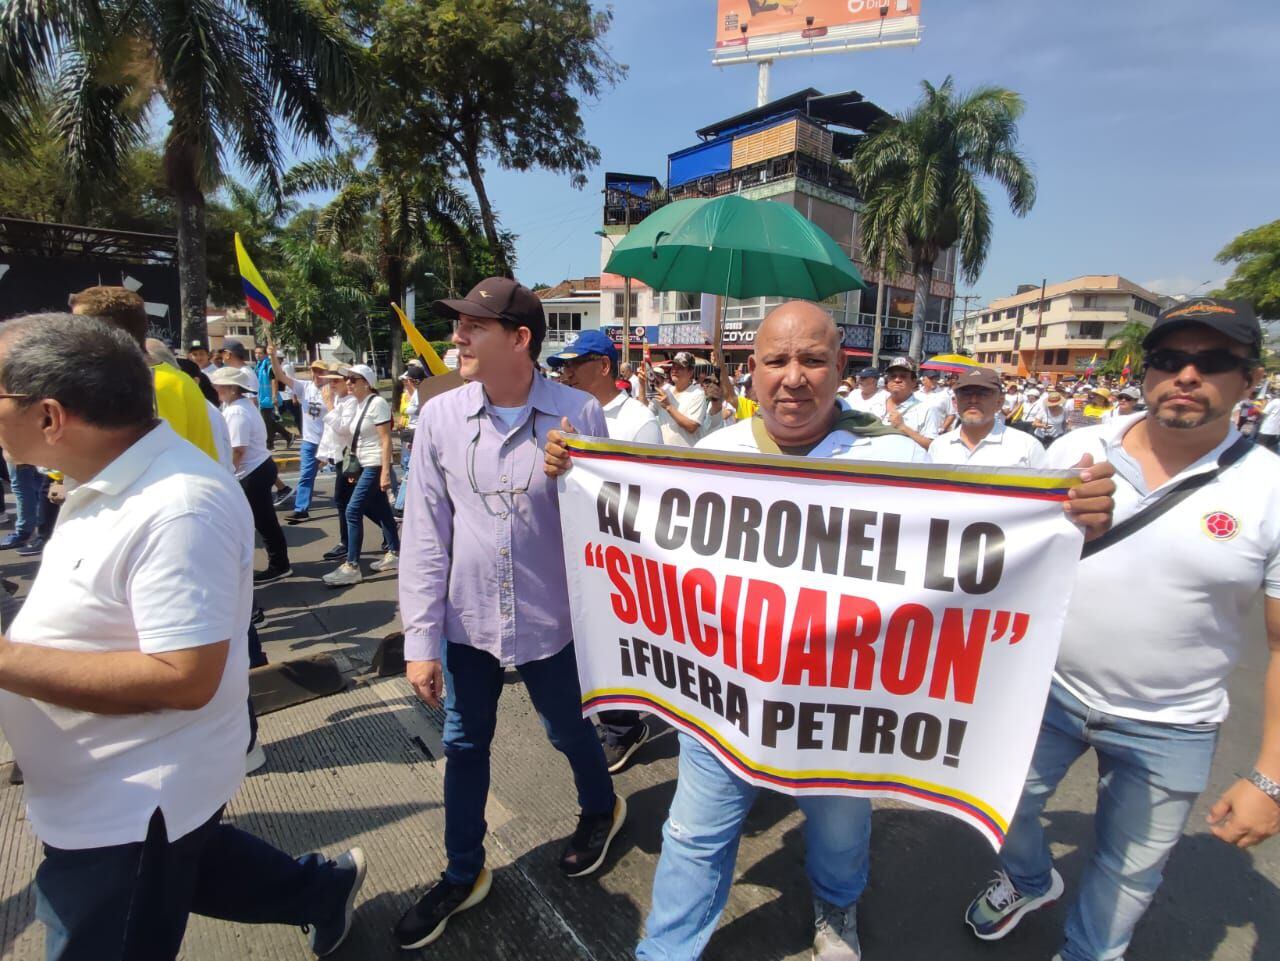 Marcha de la oposición o "marcha de la mayoría" contra el gobierno Petro en Cali